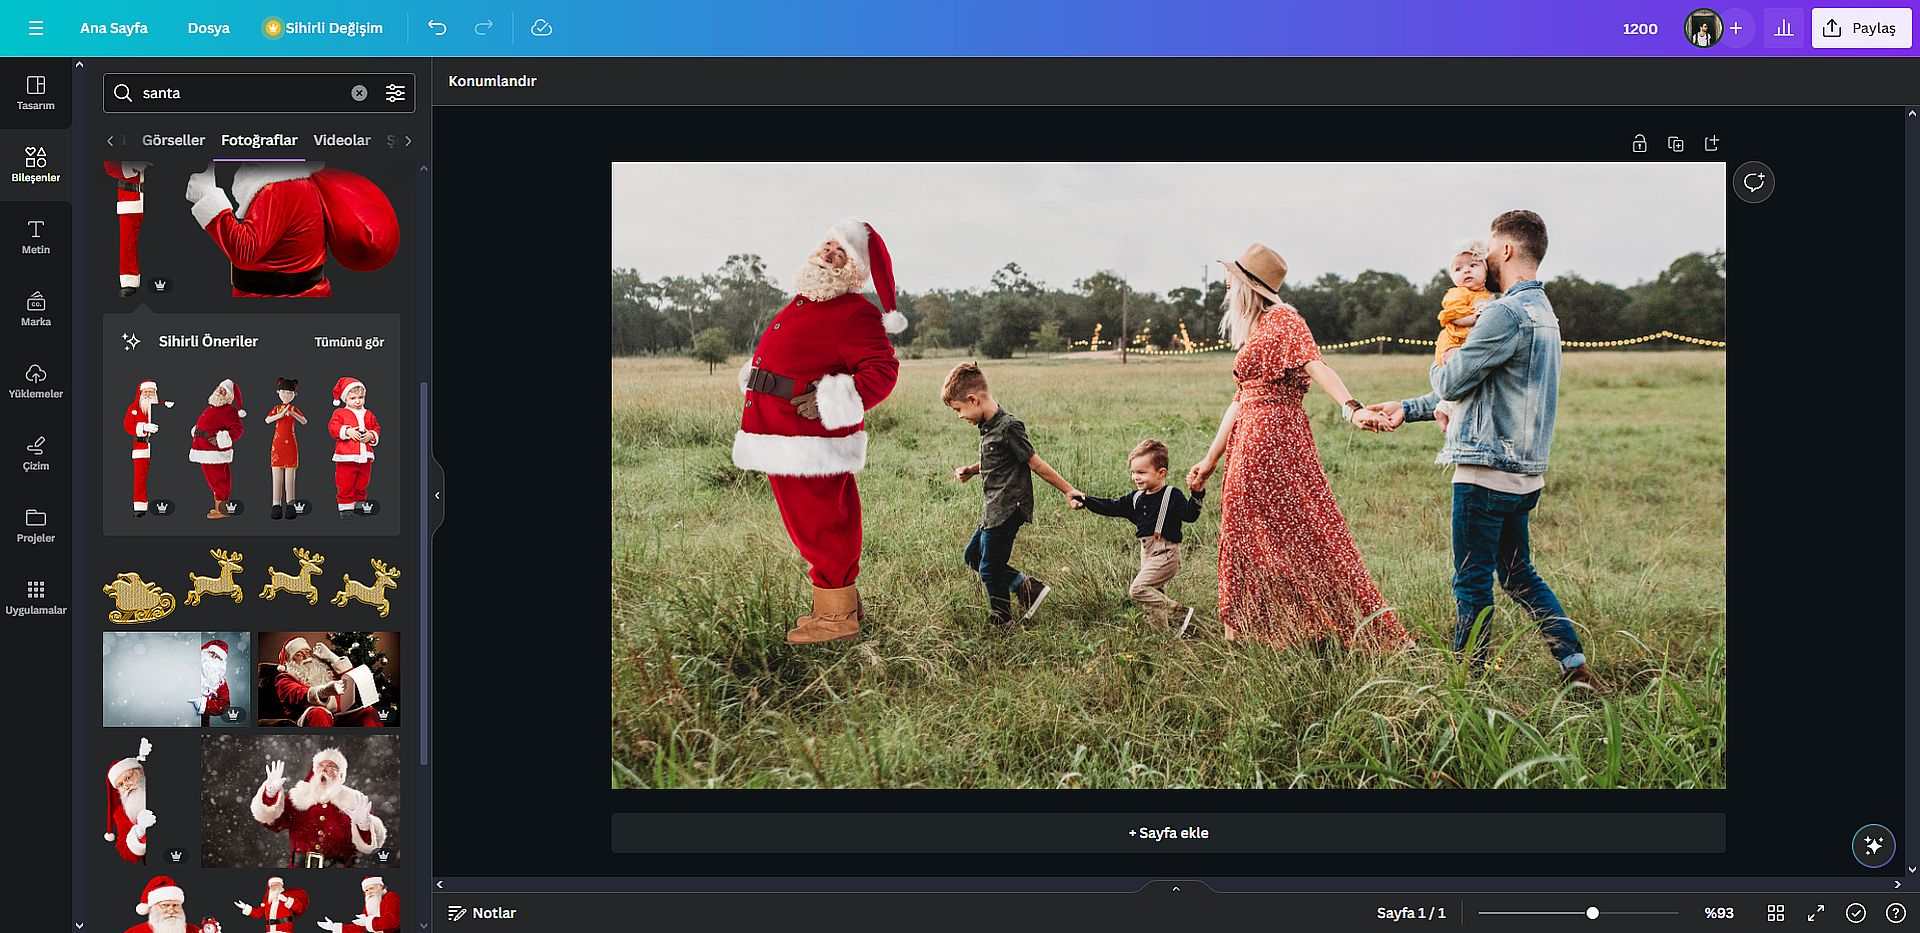 최고의 AI 크리스마스 사진 생성기: DALL-E, Midjourney, Photoshop AI 등을 사용하여 AI 예술성으로 휴가 사진을 업그레이드하세요.